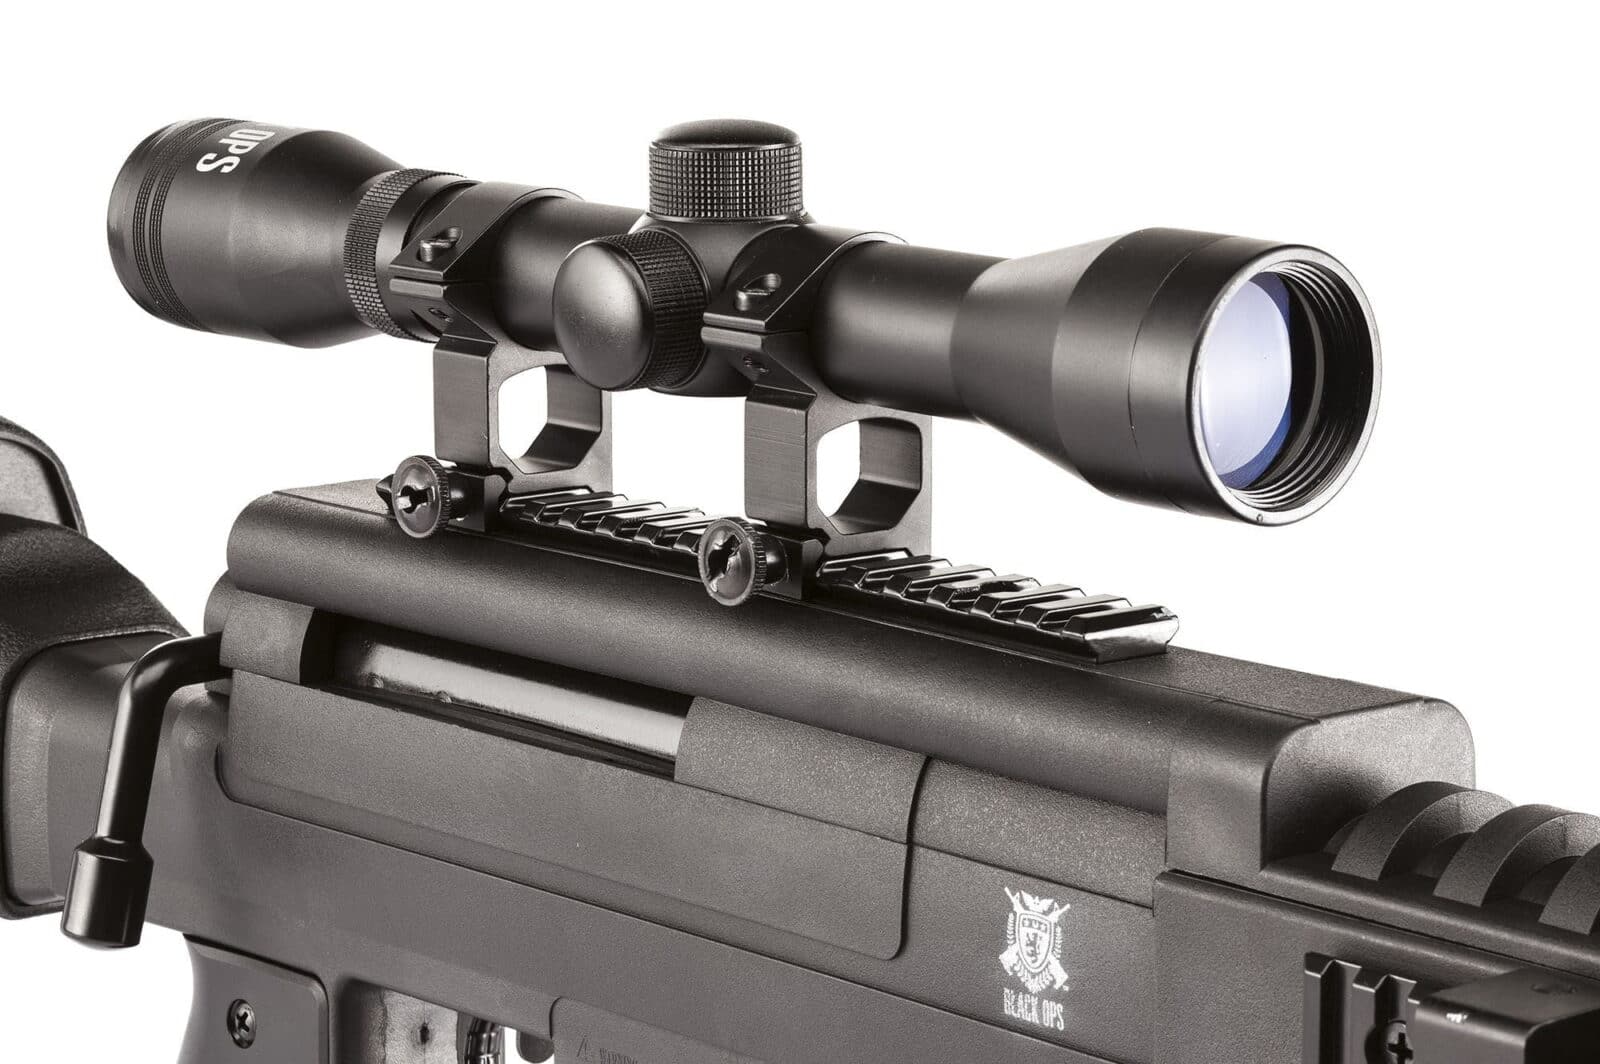 Carabina Rifle Sniper Black Ops 4.5 mm con visor - Espadas y Más